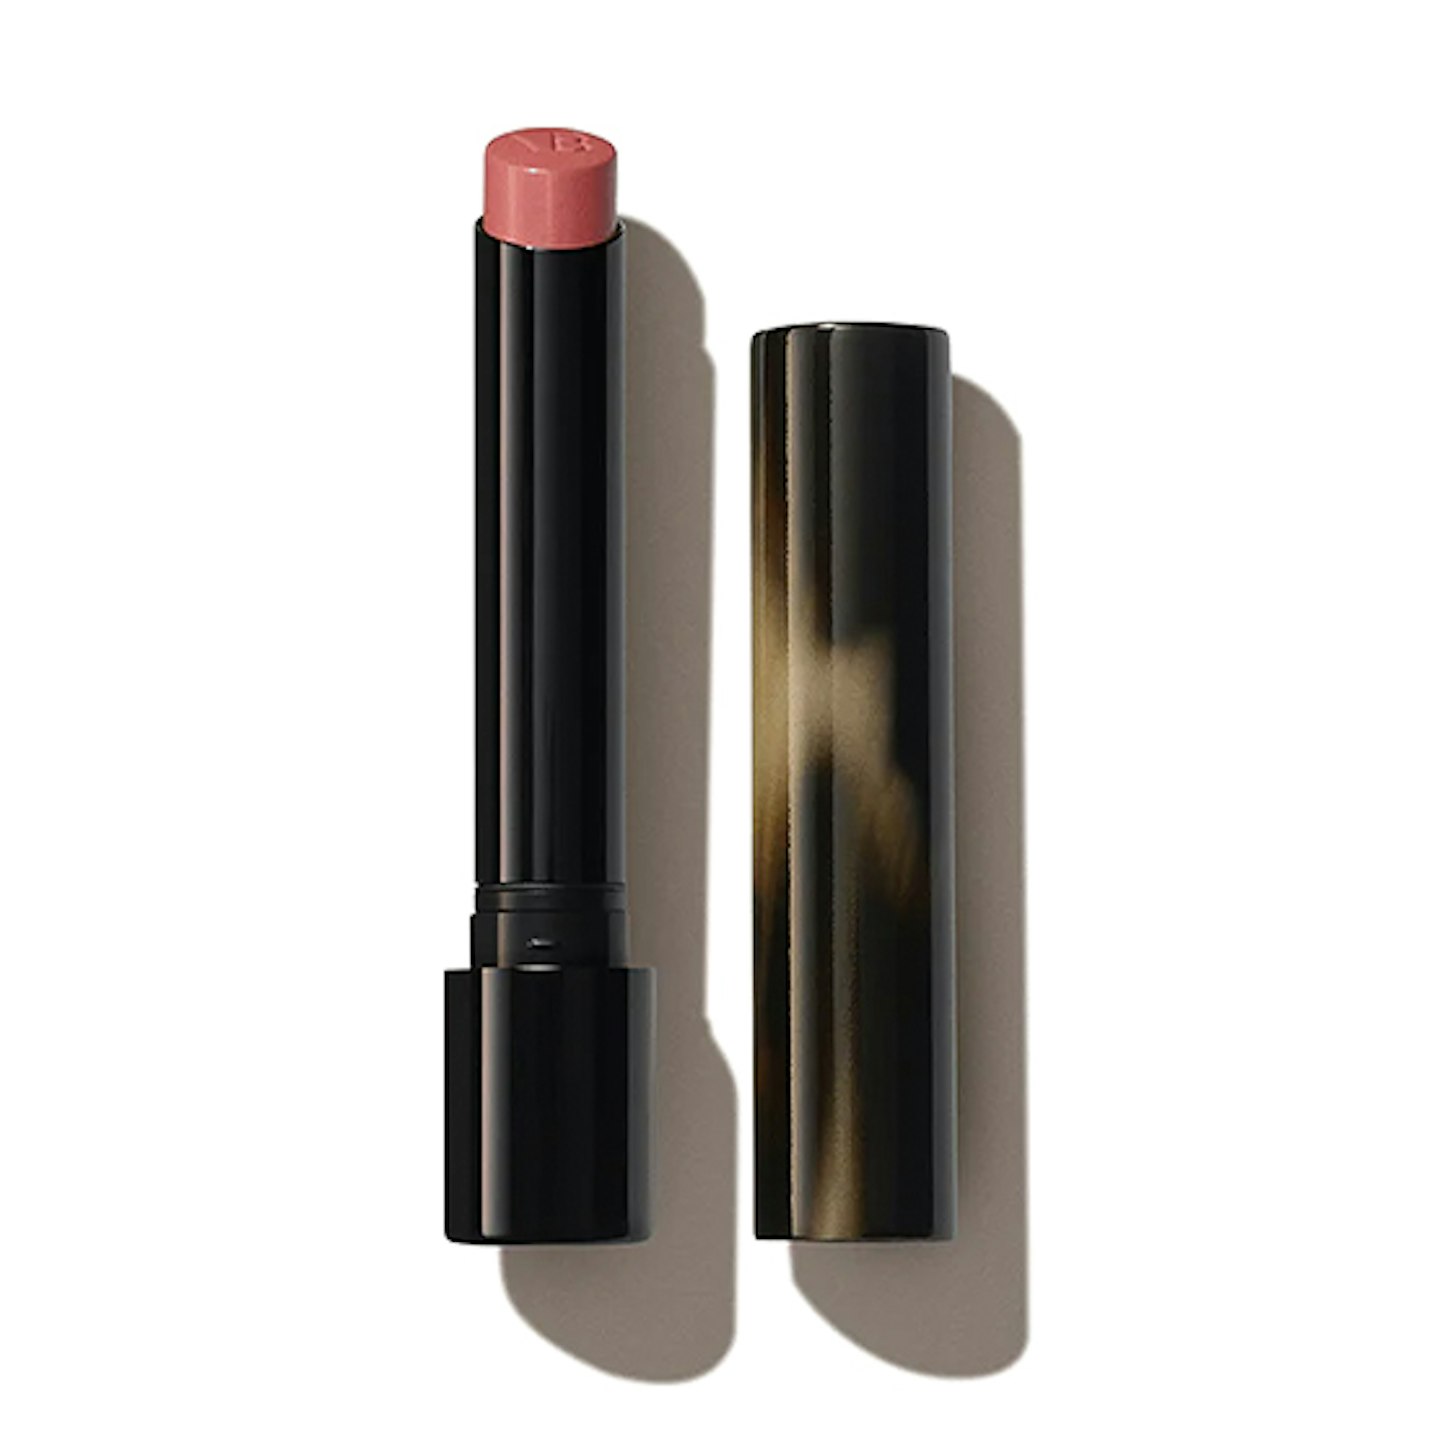 Victoria Beckham Beauty lipstick